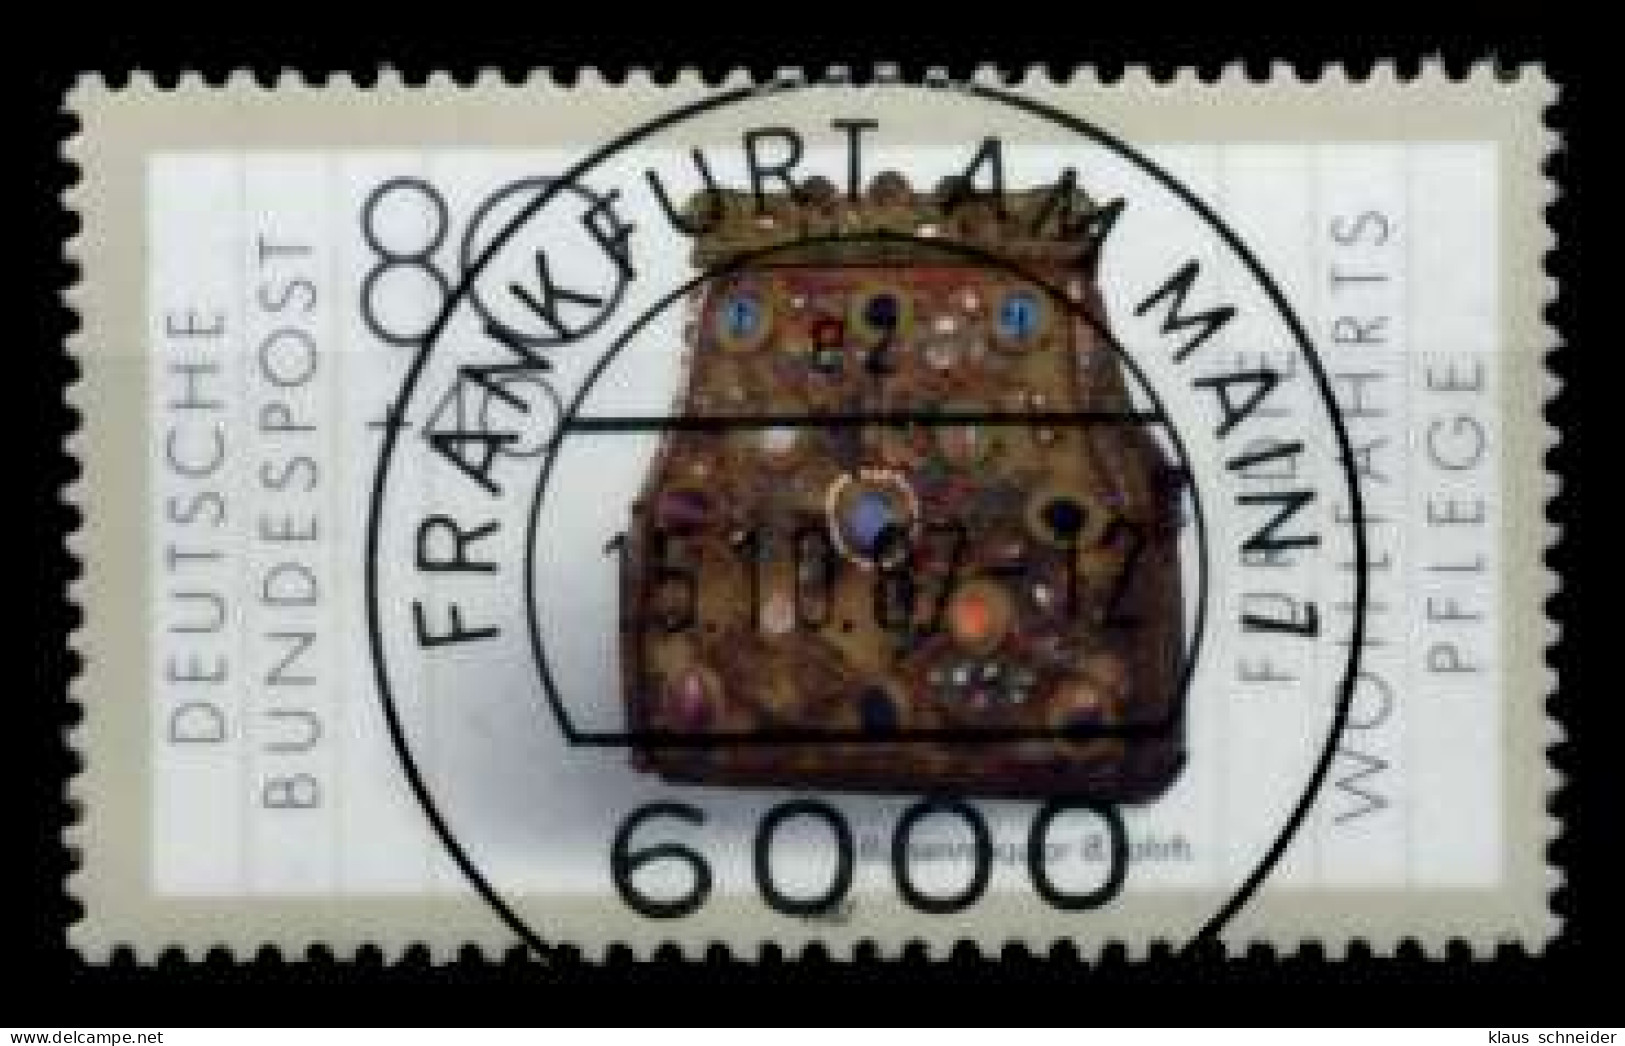 BRD 1987 Nr 1336 Zentrisch Gestempelt X8A736A - Used Stamps